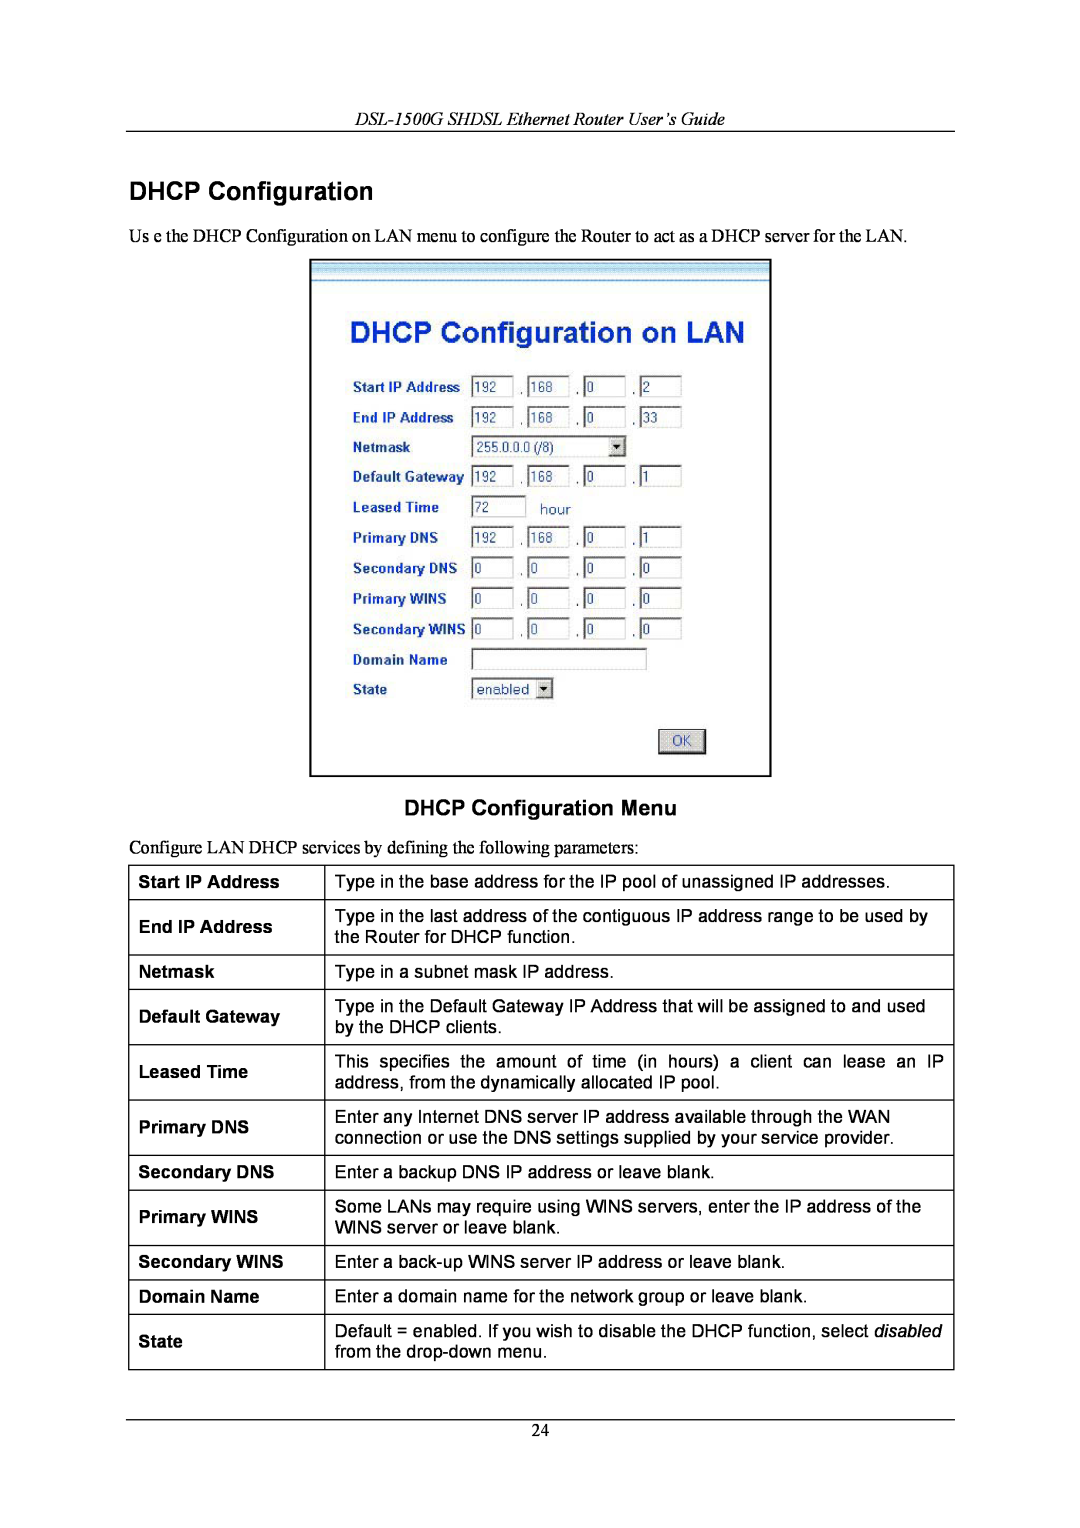 D-Link manual DHCP Configuration Menu, DSL-1500G SHDSL Ethernet Router User’s Guide 